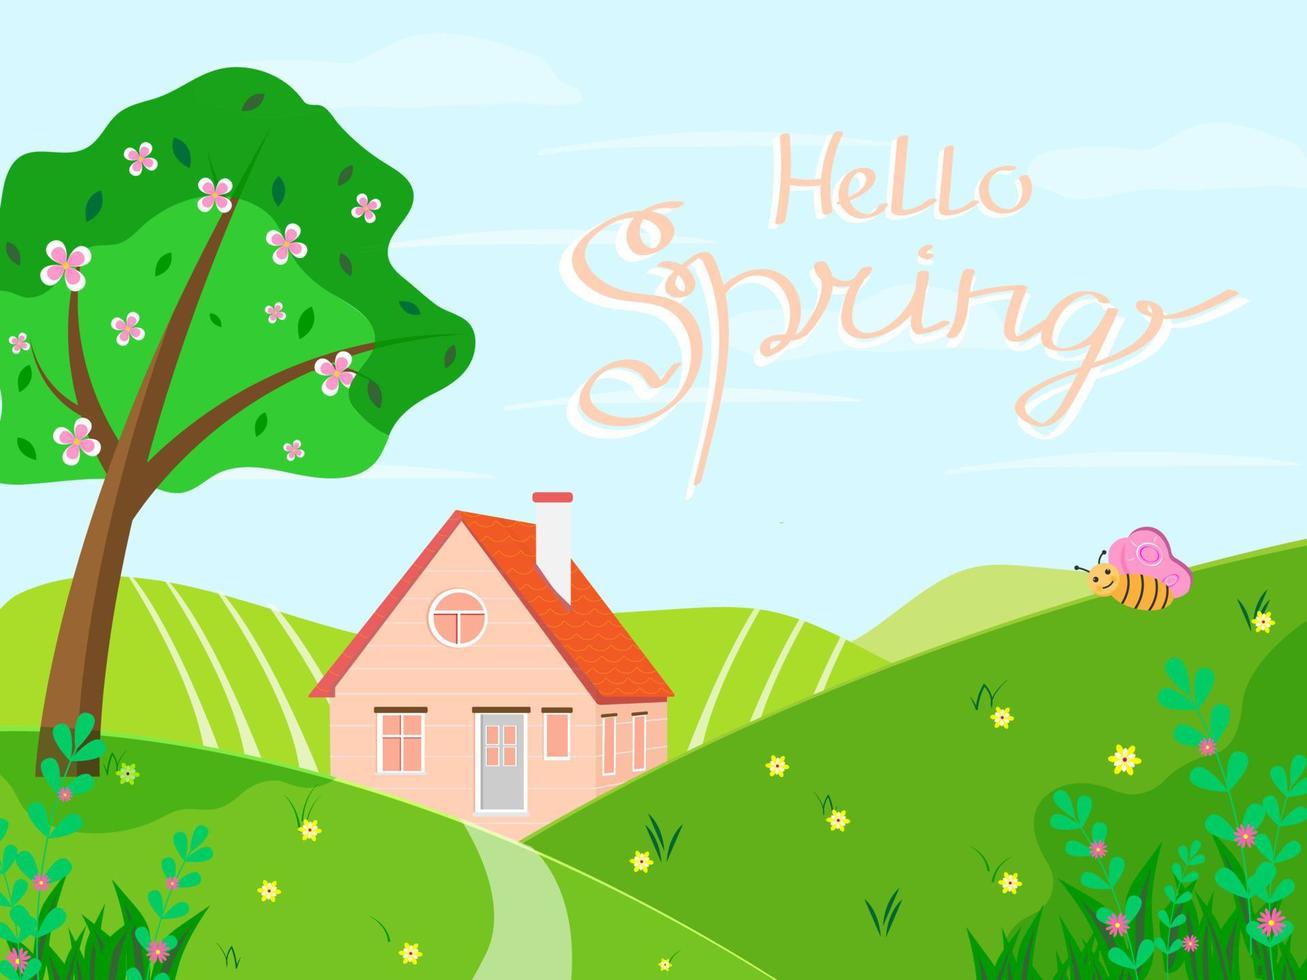 Bonjour Printemps. paysage de printemps avec arbre, fleurs, maison. paysage de campagne saisonnier. illustration vectorielle dans un style plat vecteur